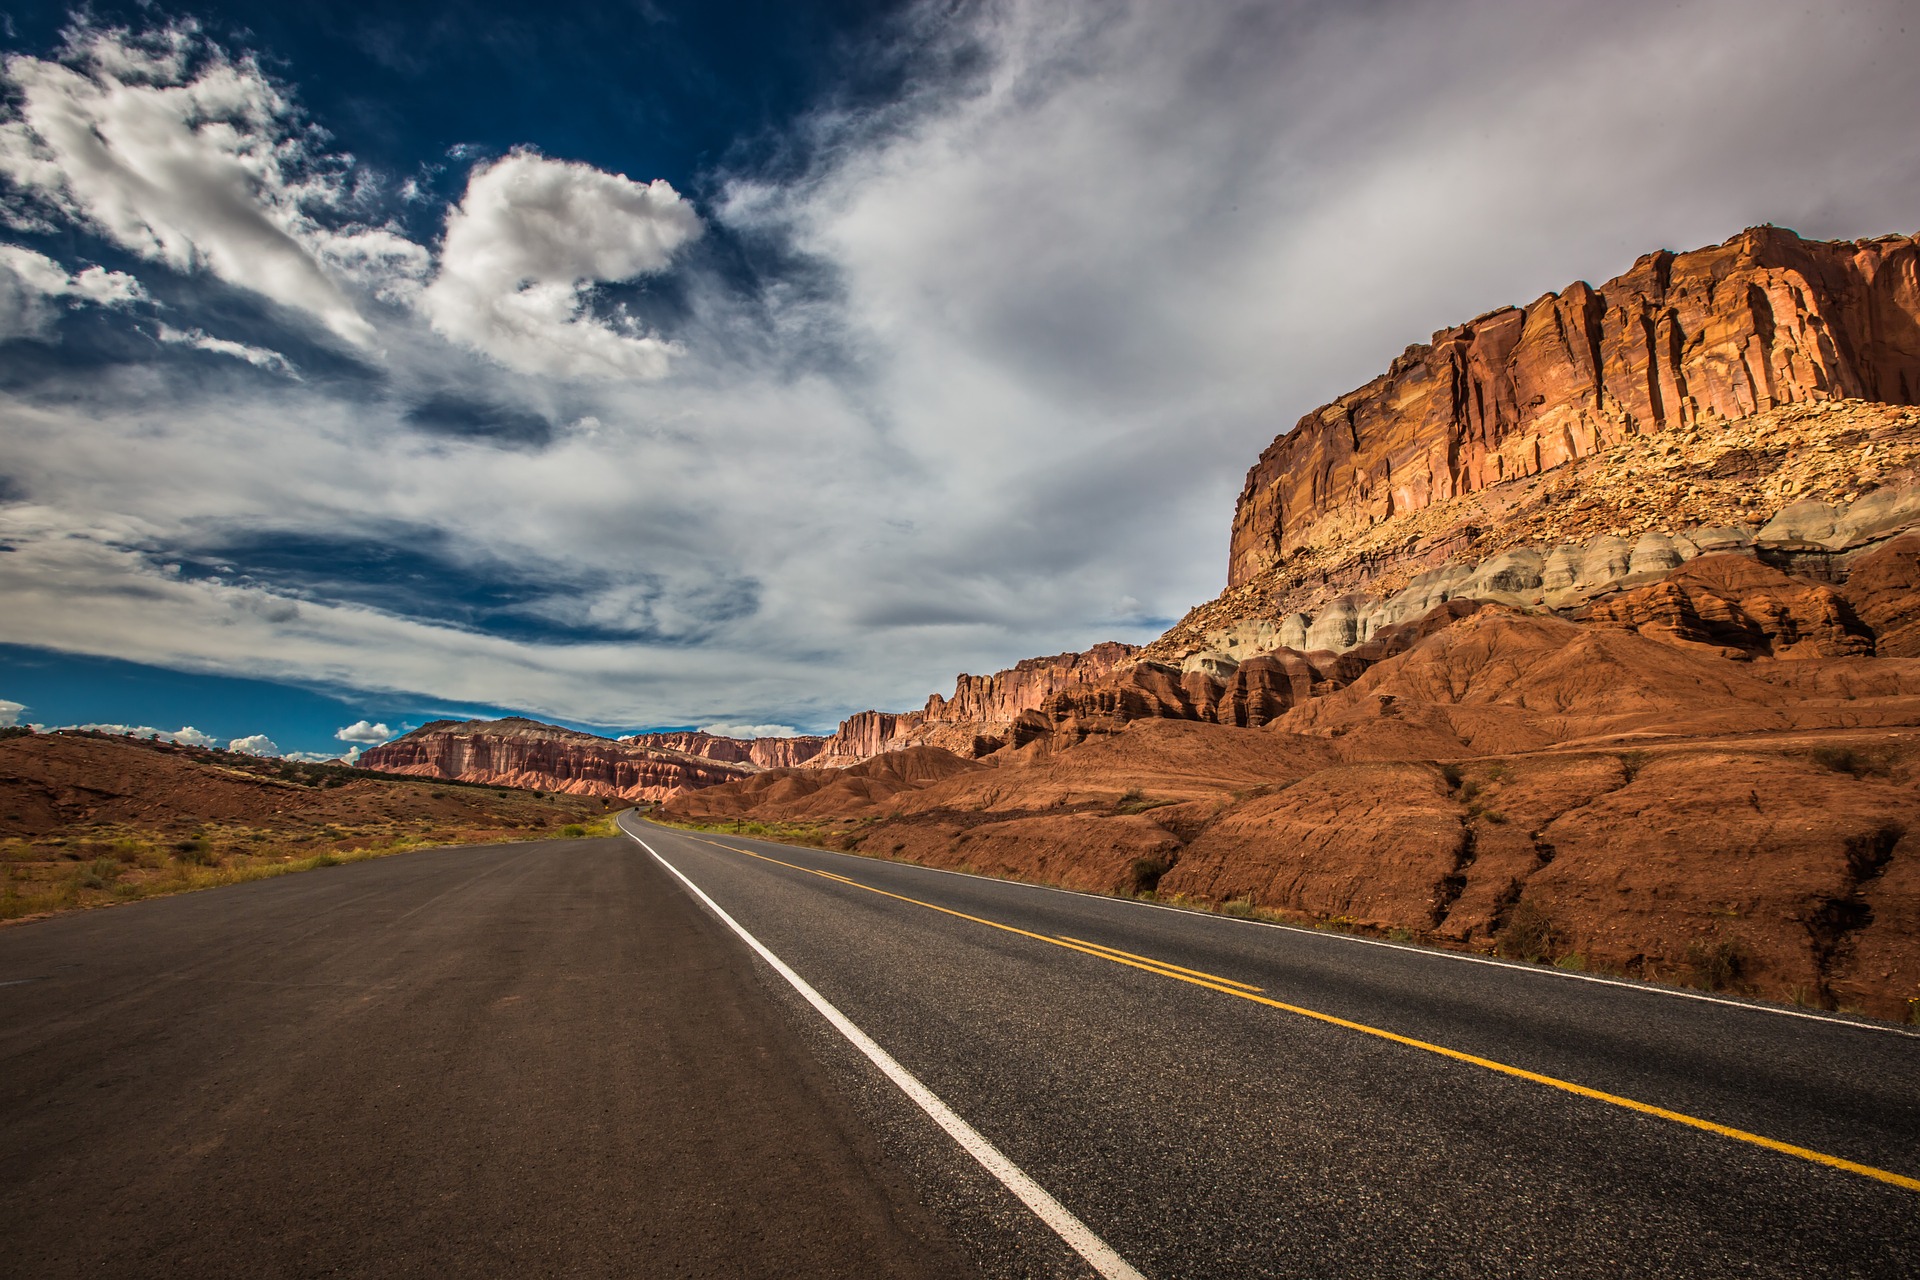 Road to Utah